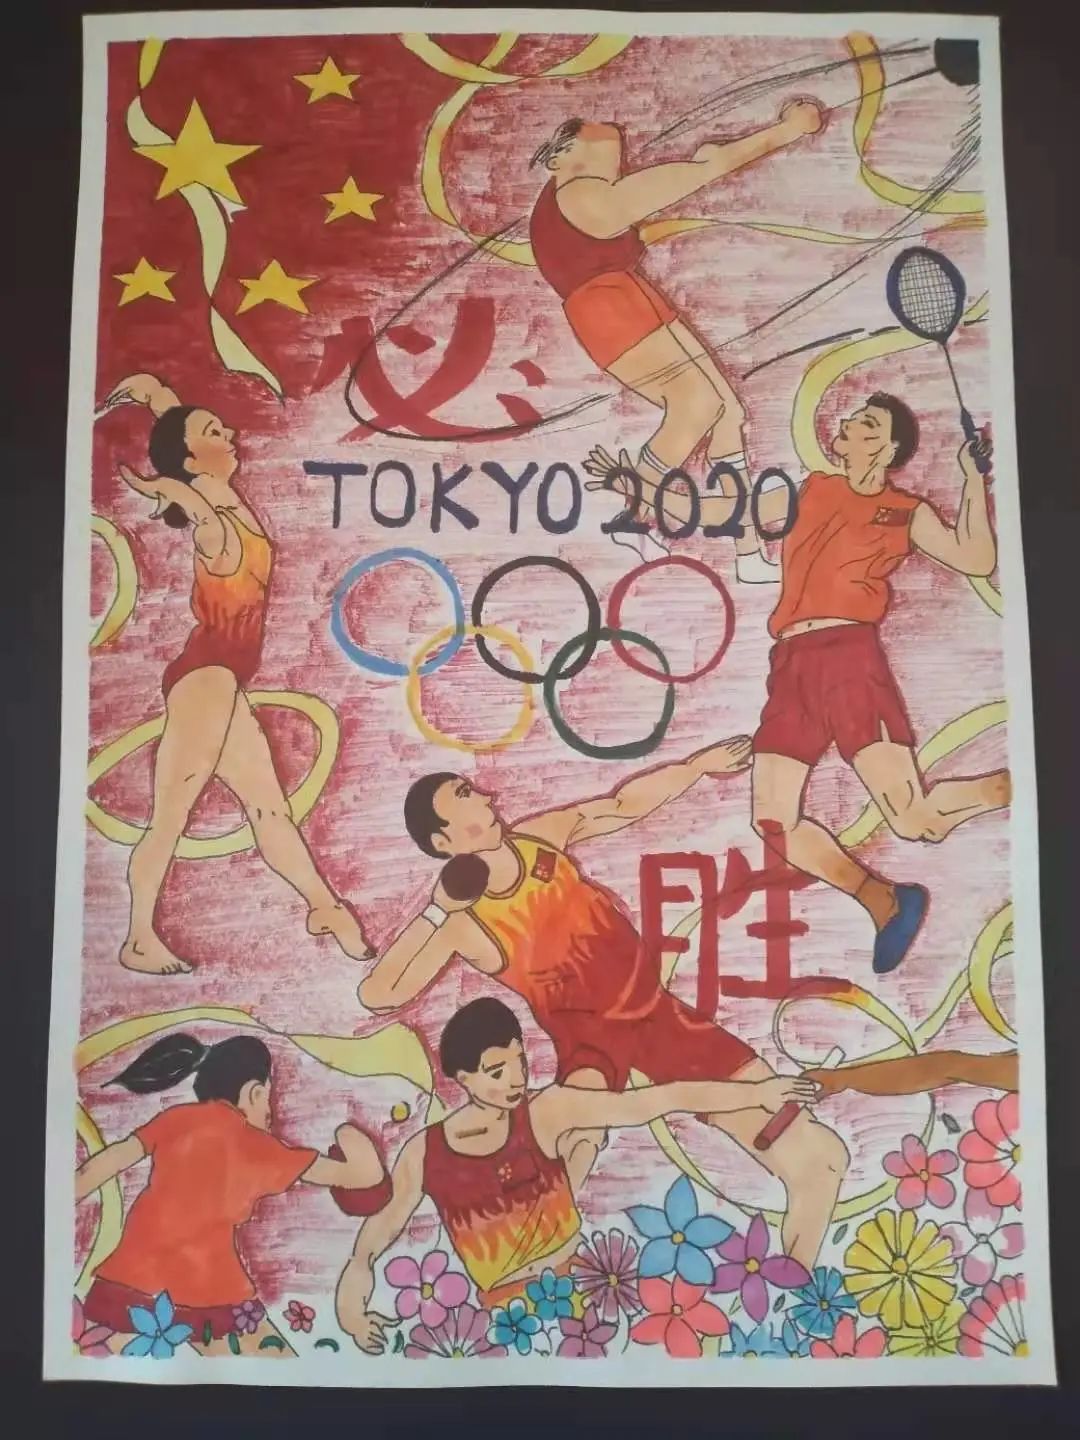 奥运会马克笔绘画图片